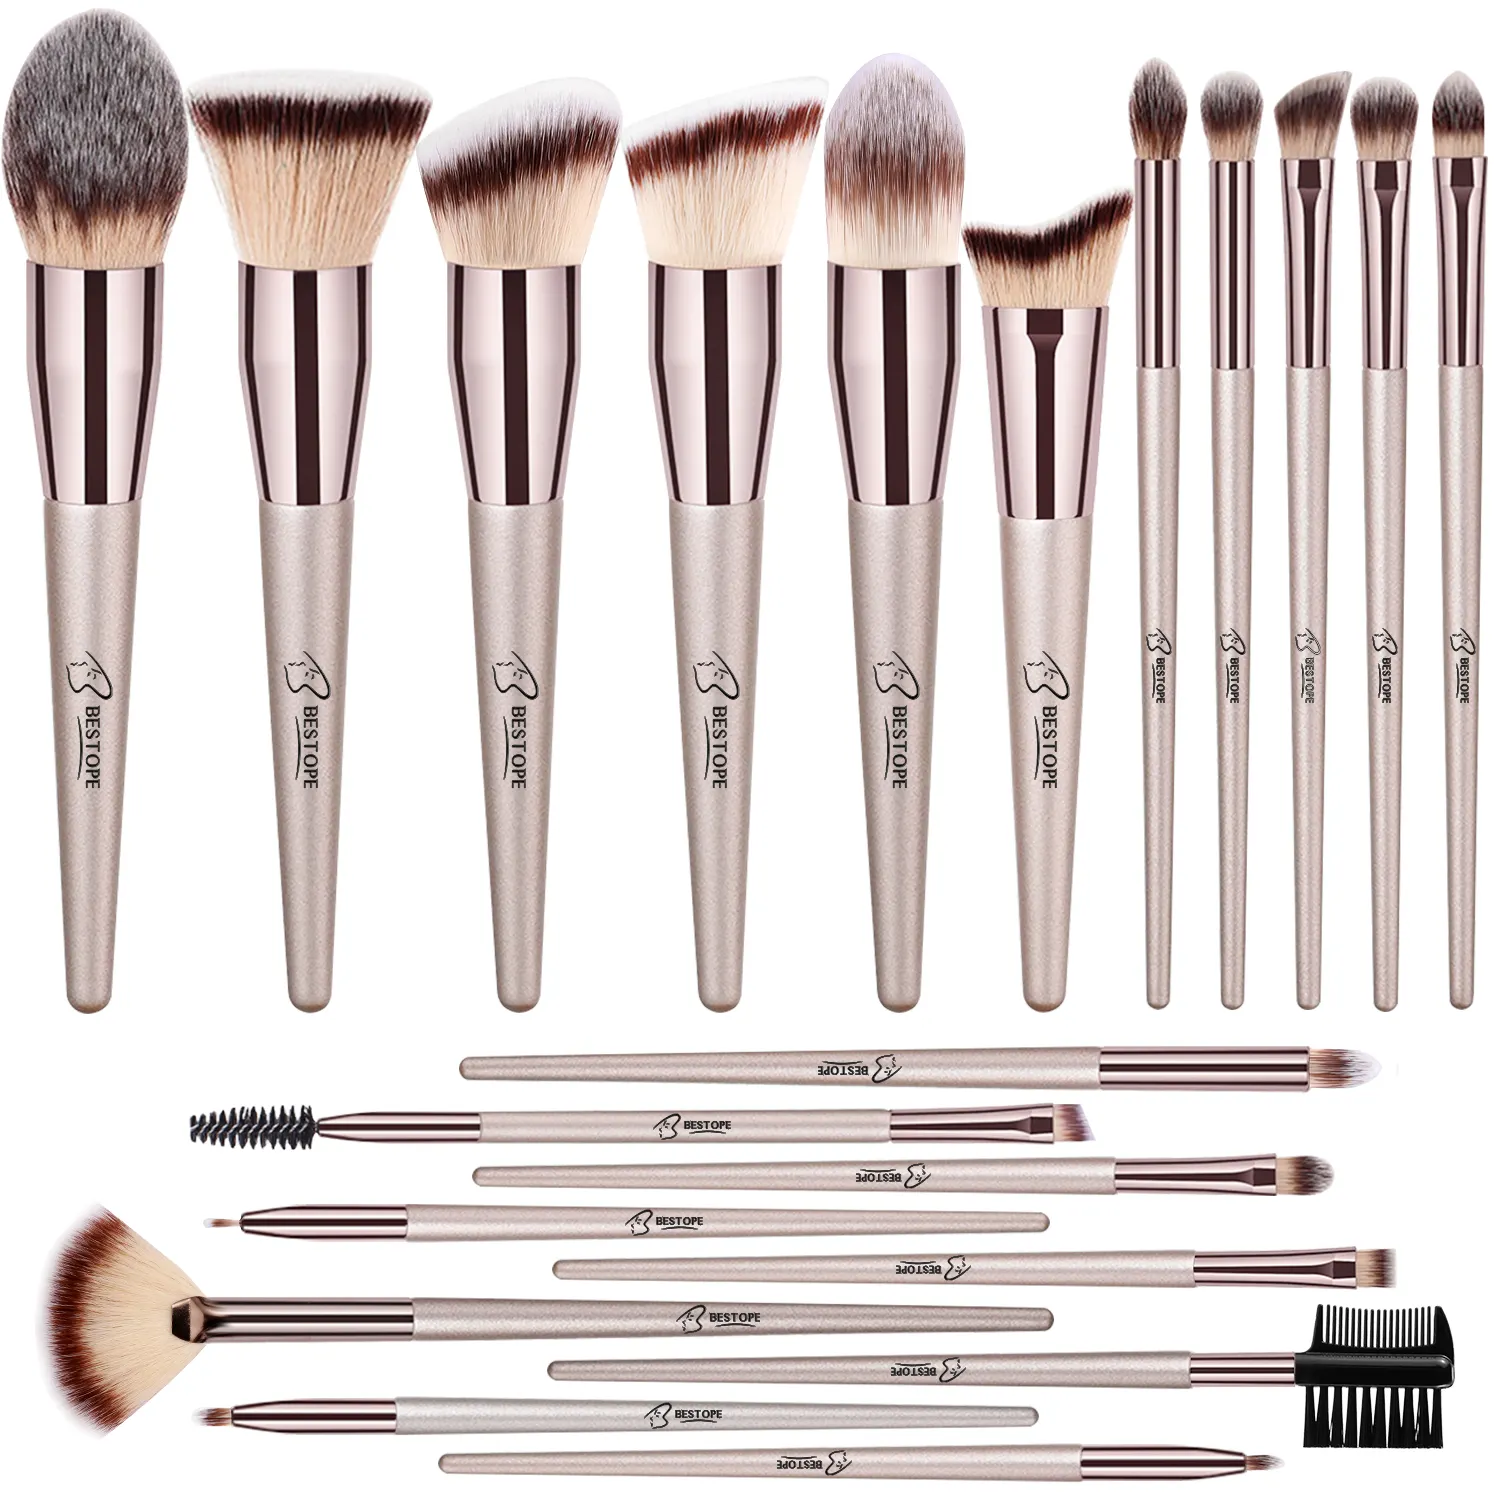 Professional 20Pcs Makeup Brush Set Bestope Beauty brushes for Eye shadow brush set